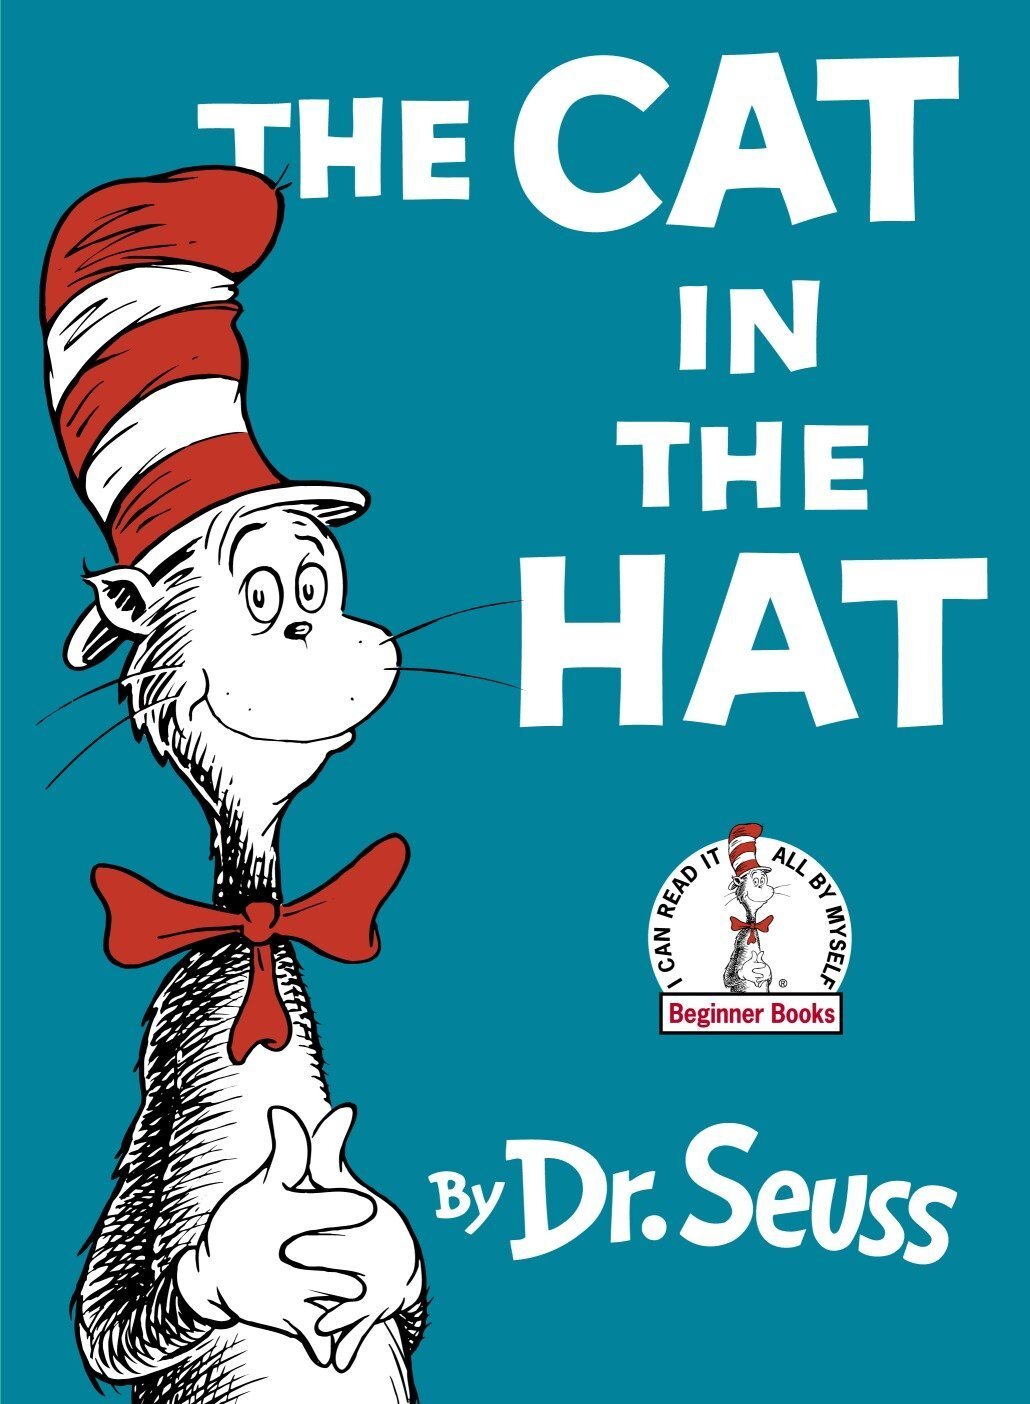 圖說：《戴帽子的貓》（The Cat in the Hat）是蘇斯博士（Dr. Seuss，1904~1991）在一九五七年出版的繪本，由於使用類似繞口令的押韻文句讓故事朗朗上口，加上內容充滿天馬行空的奇想、插畫又活潑有趣，至今仍然非常受到孩子歡迎。蘇斯博士的誕辰紀念日三月二日，更被美國全國教育協會訂為「全美閱讀日」（National Read Across America Day），而戴著紅白高帽、打著紅色領結的那隻熱愛玩把戲的貓咪，也成為美國小孩心中最經典的貓之一。圖為英語版書封，圖片來源：Amazon。